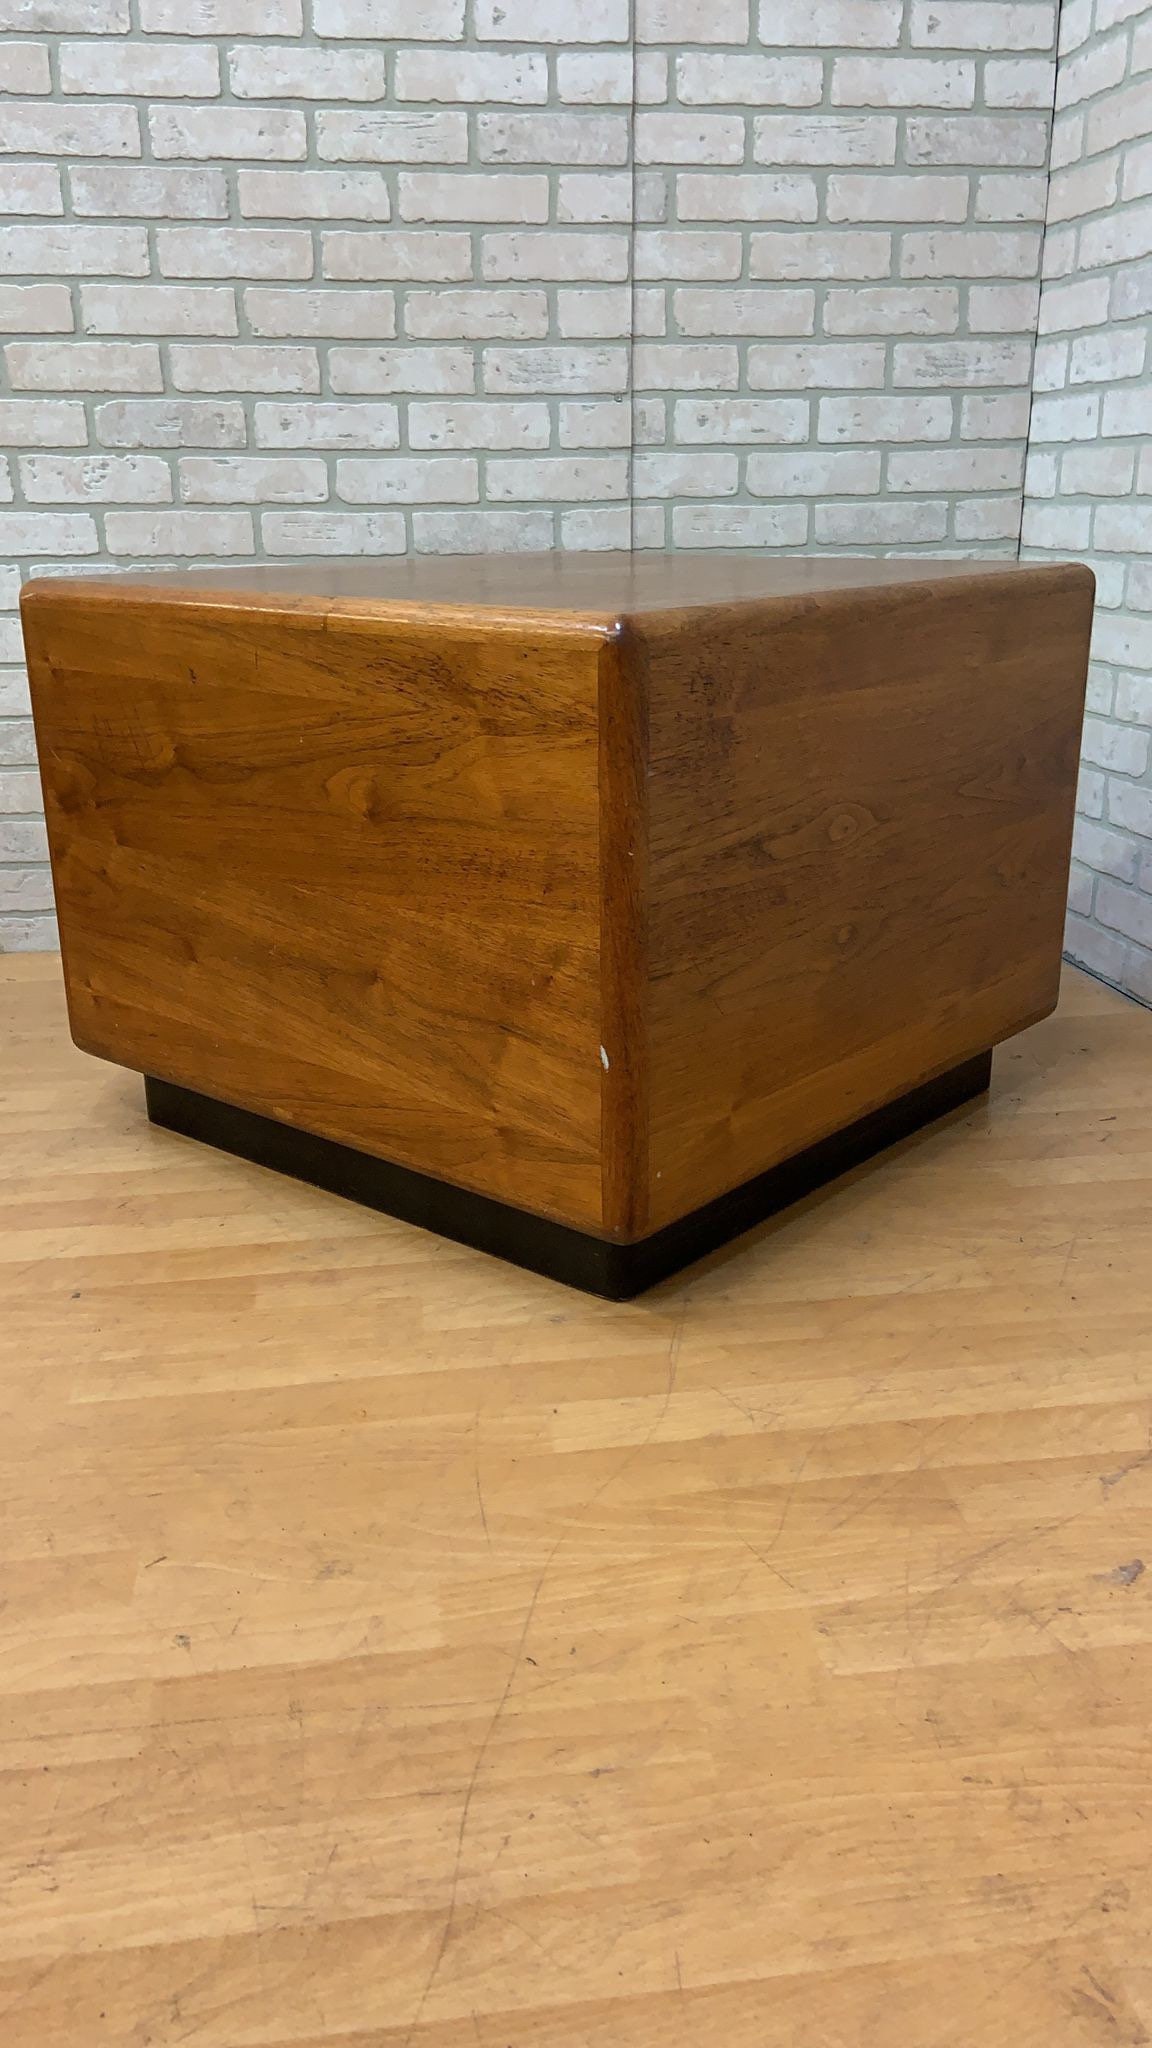 Portland Ice Box Wood Storage Side Table with Replica Hardware - Walnut